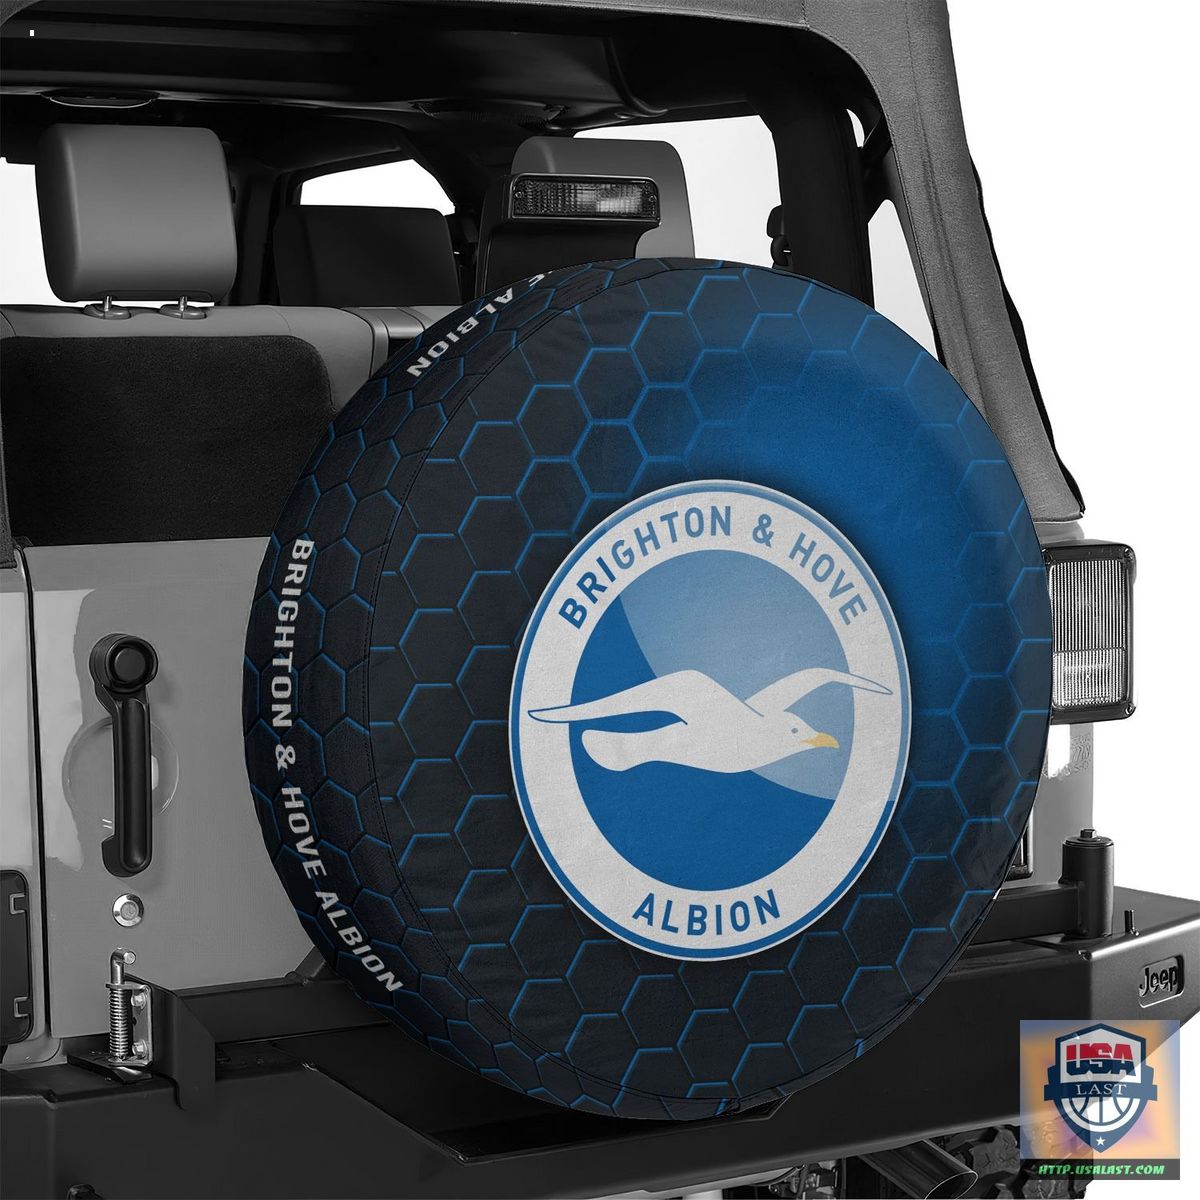 AMAZING Brighton & Hove Albion FC Spare Tire Cover